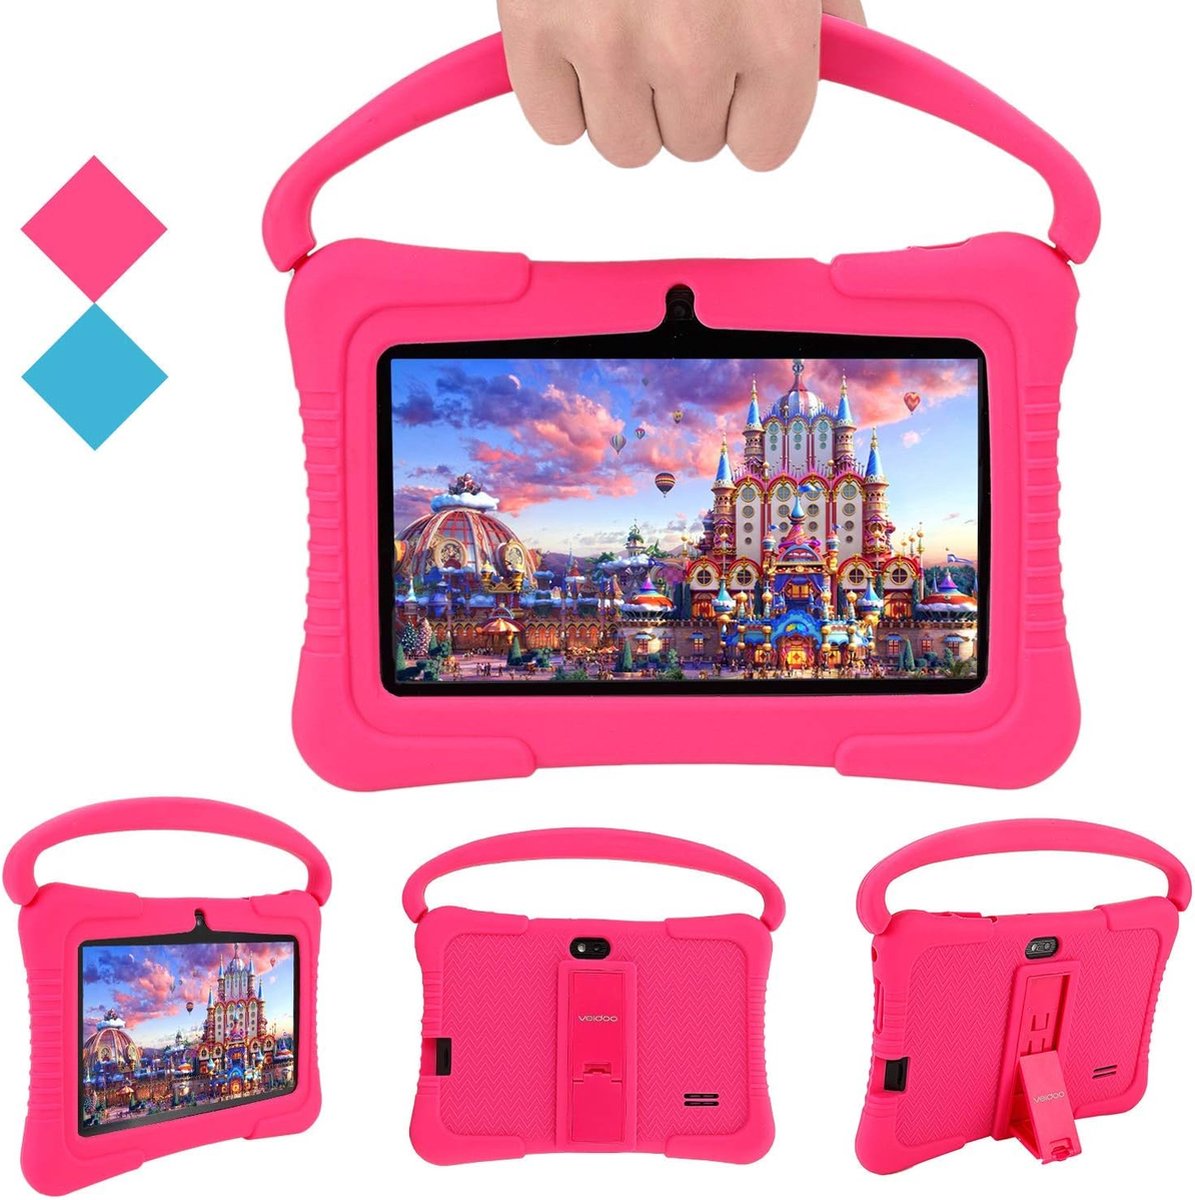 Veidoo Tablet voor kinderen, 7 inch tablet met 1 GB RAM/16 GB geheugen, IPS-scherm, premium ouderbesturing iWawa APP, kinderen (Roze)